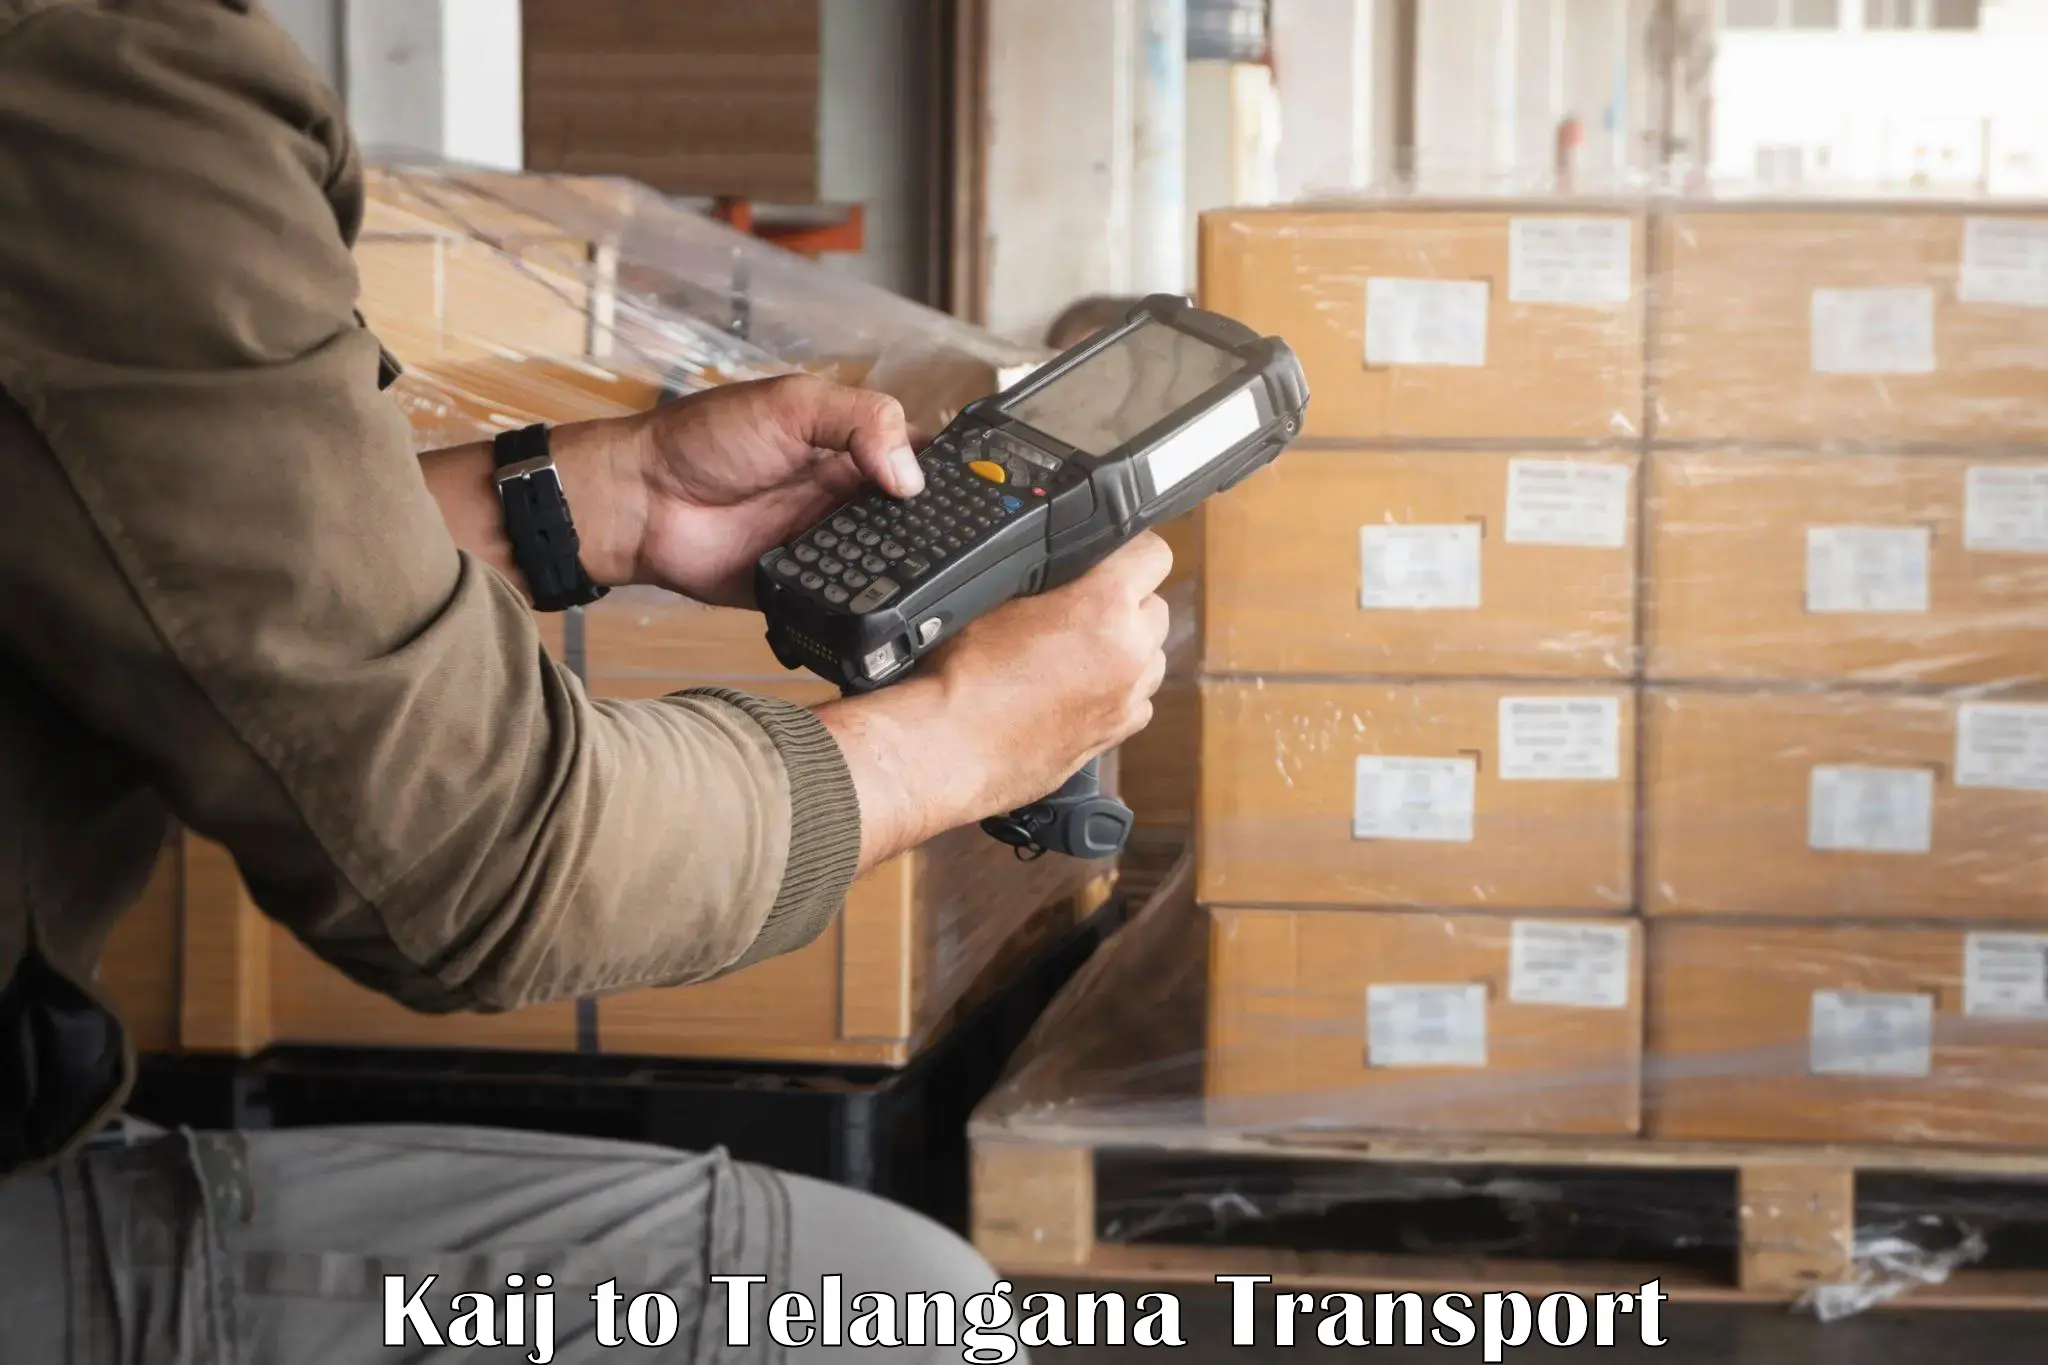 Delivery service in Kaij to Hanamkonda